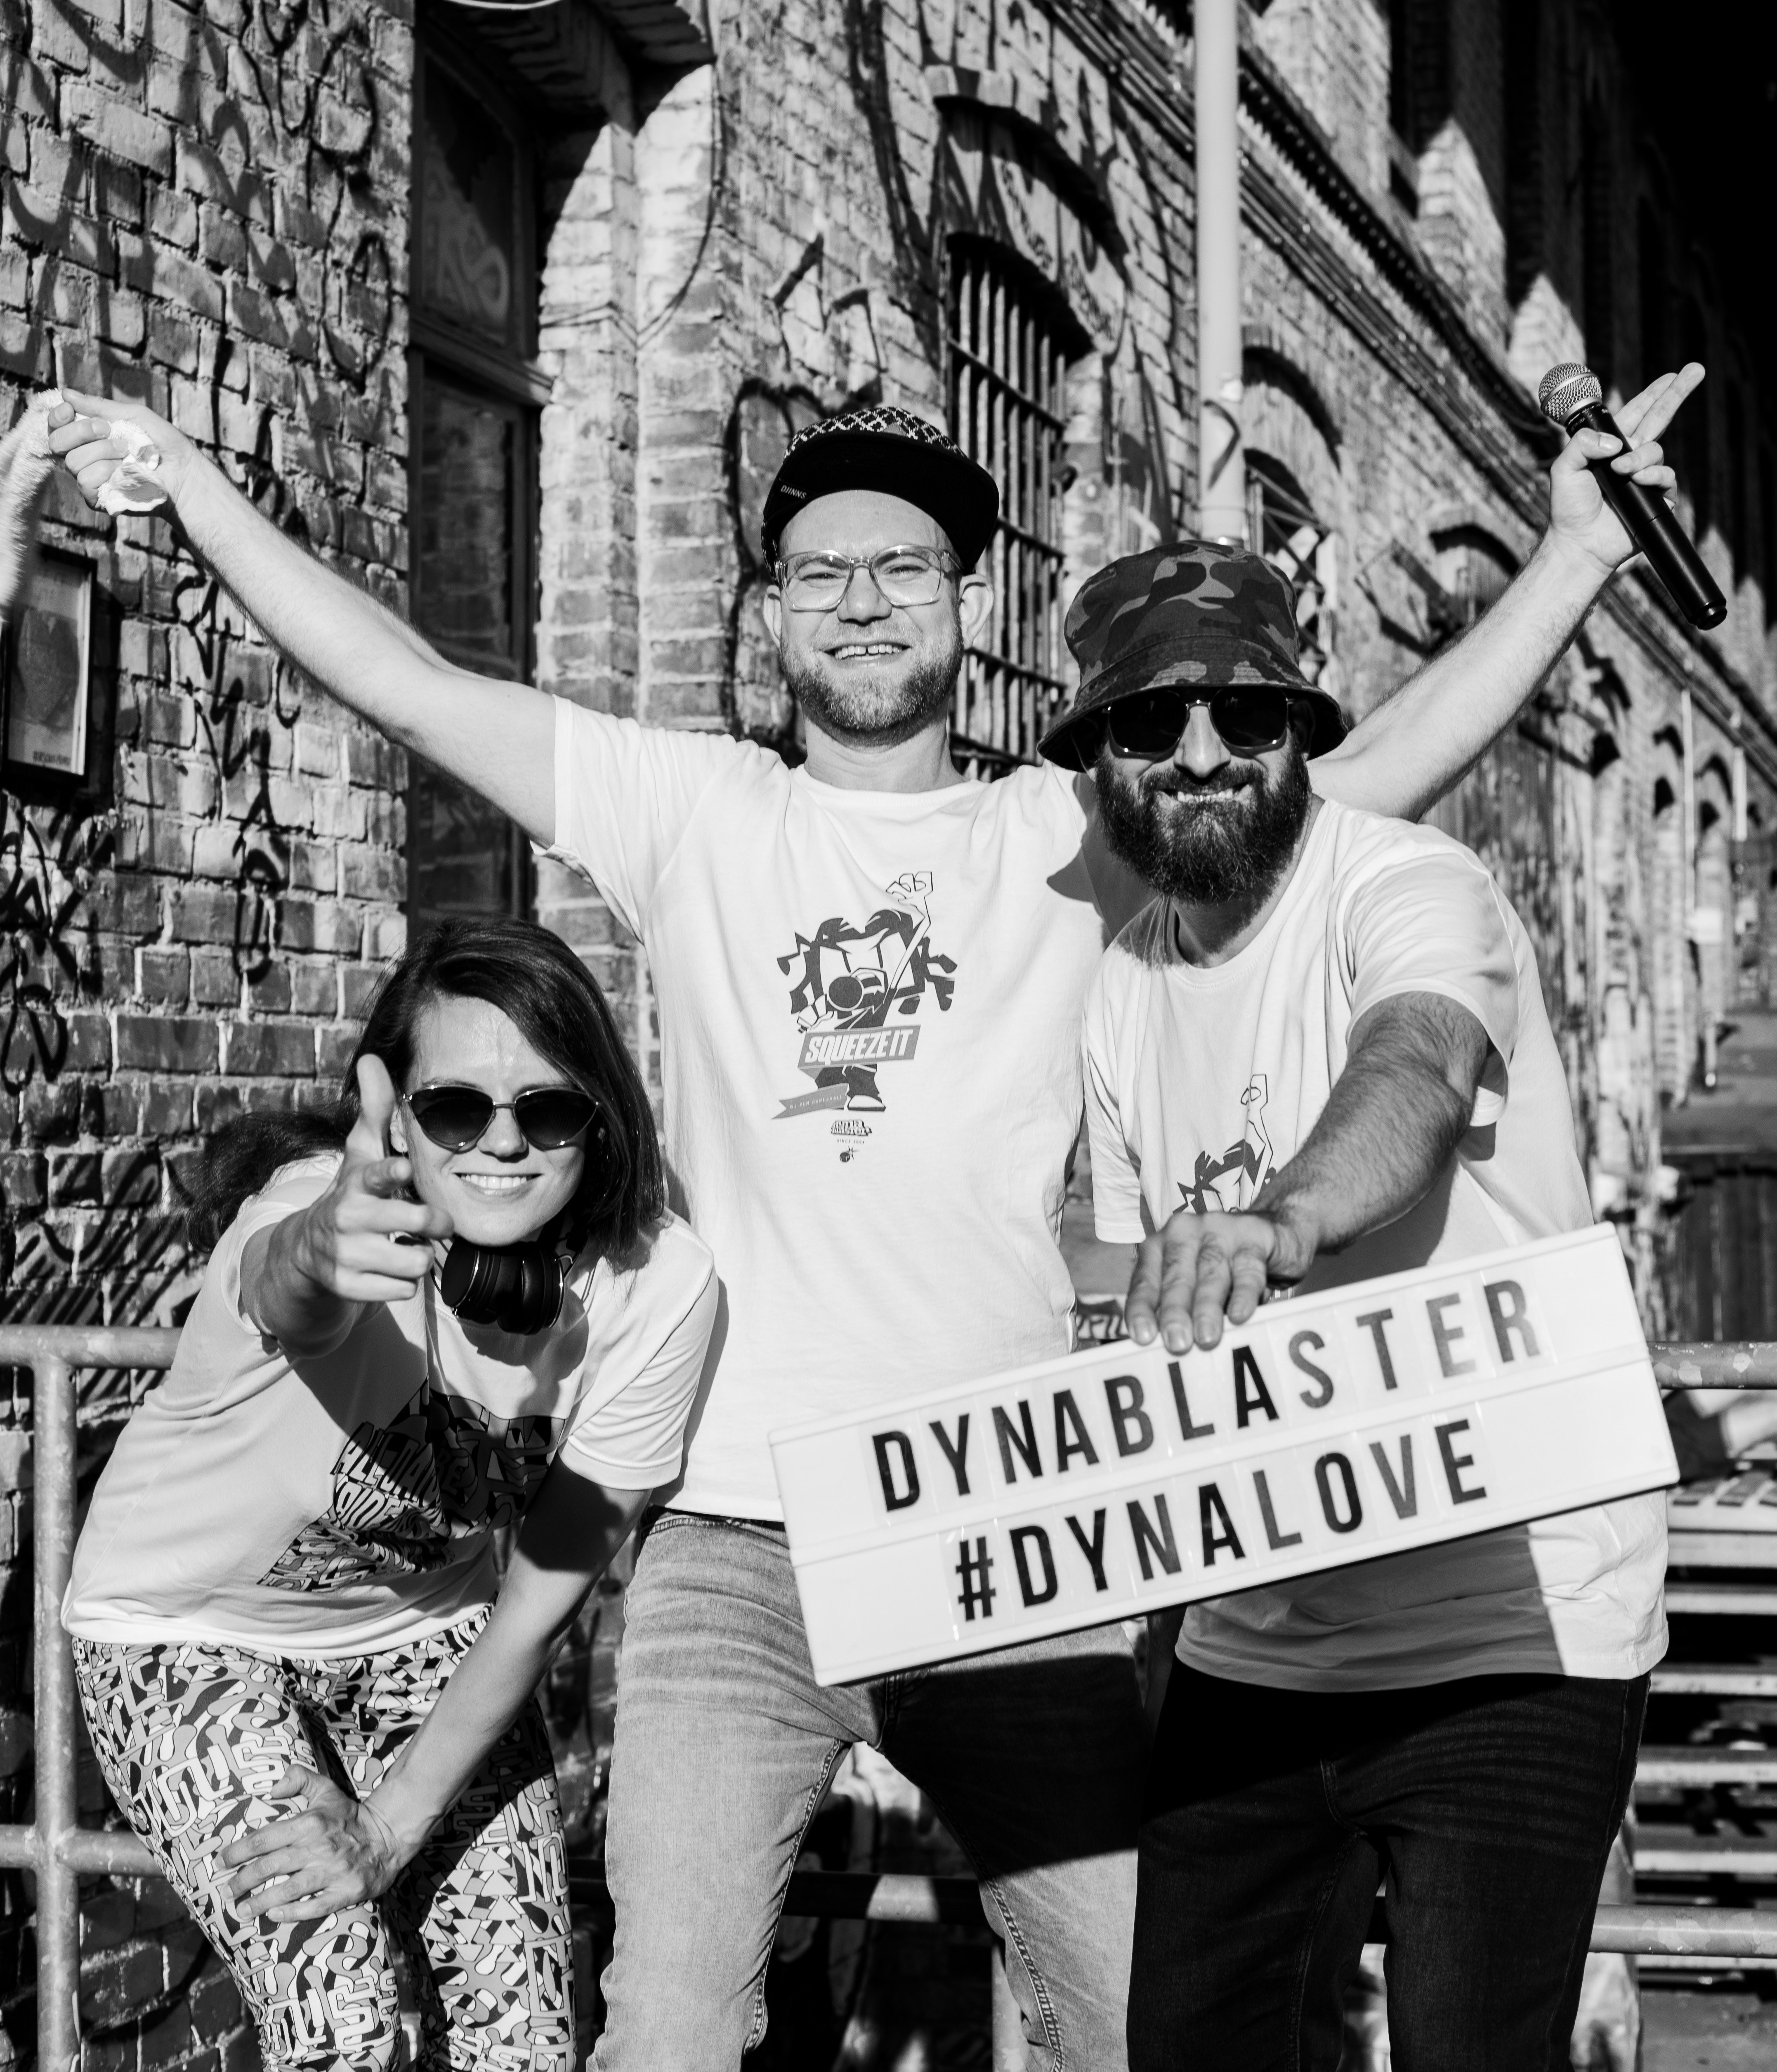 Dynablaster (Sound)